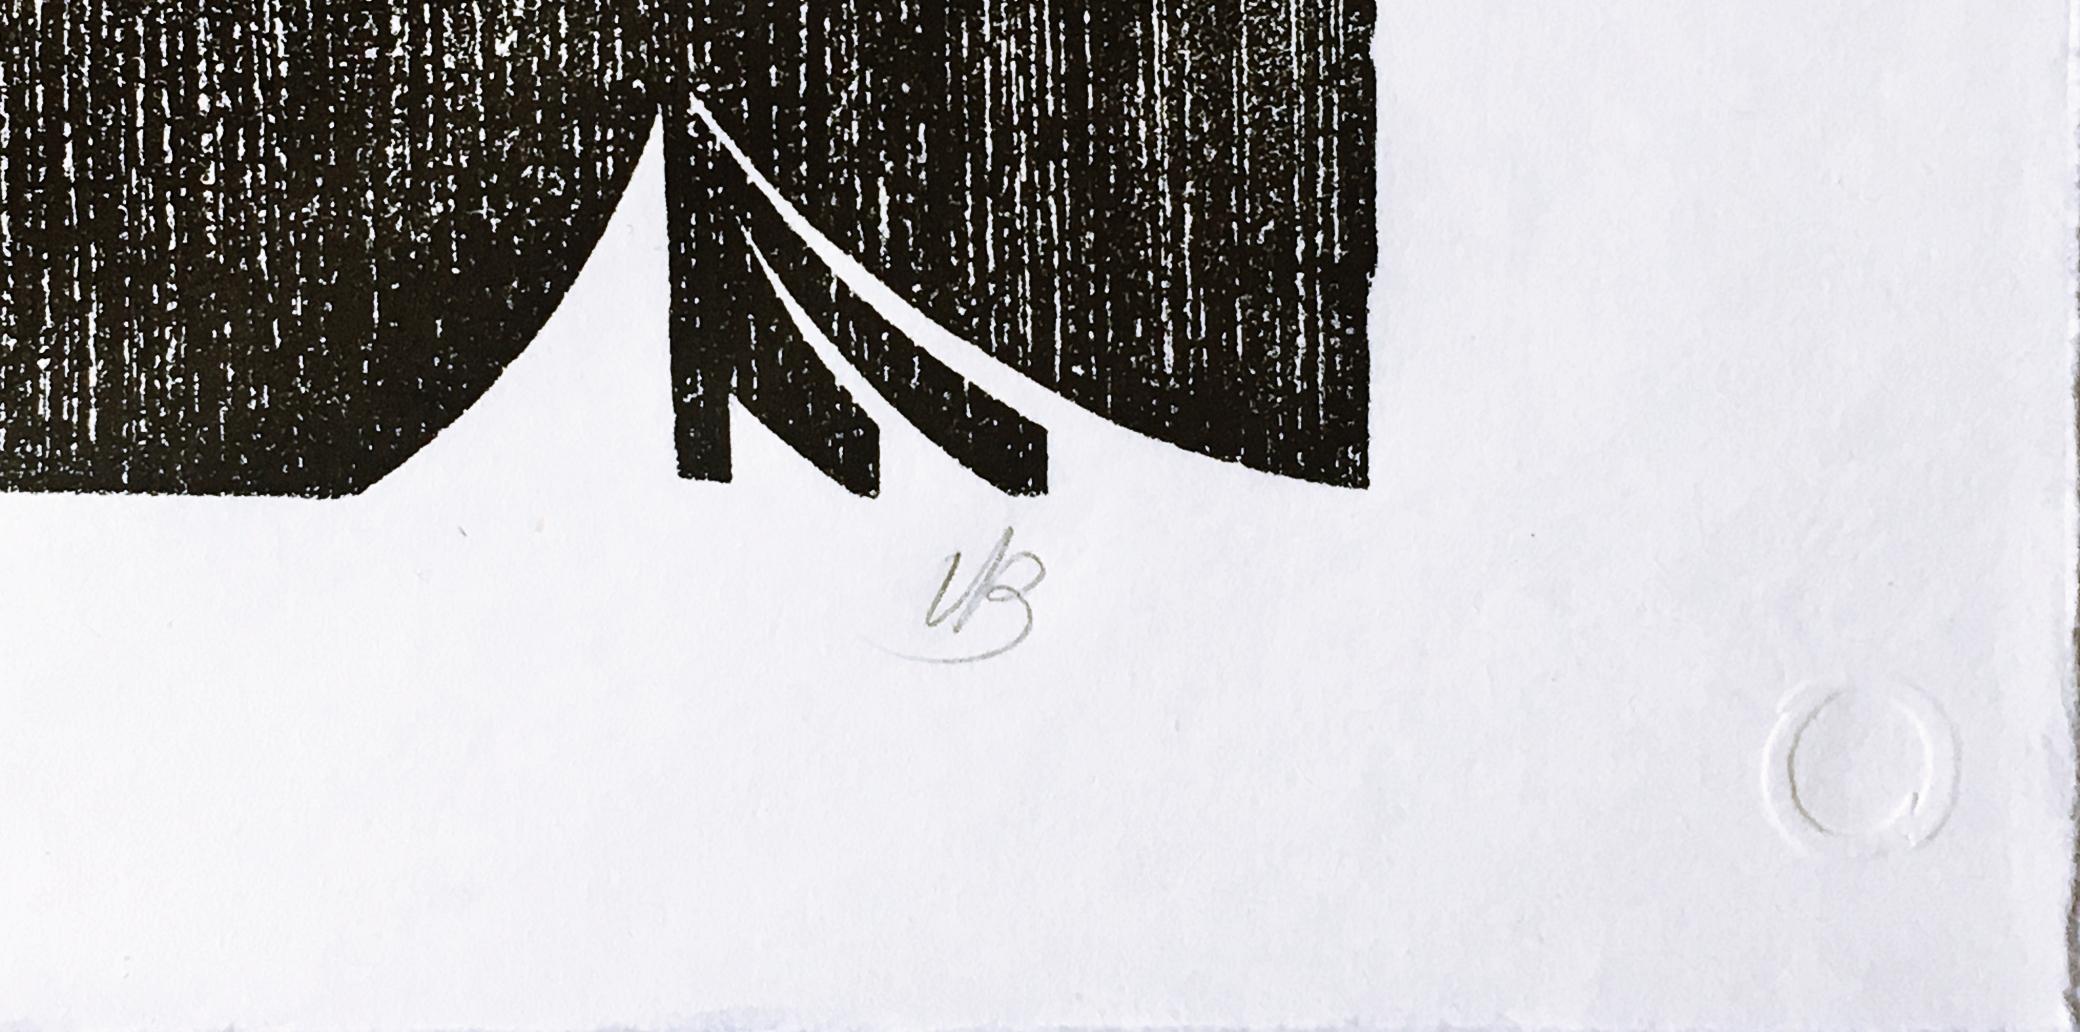 Varujan Boghosian
Sans titre, extrait du portfolio de la Long Point Gallery, 1988
Gravure sur papier de riz. Signé à la main. Numéroté. Tampon à l'aveugle de l'imprimeur. 
Signé à la main en bas à droite au recto avec le cachet de l'imprimeur et